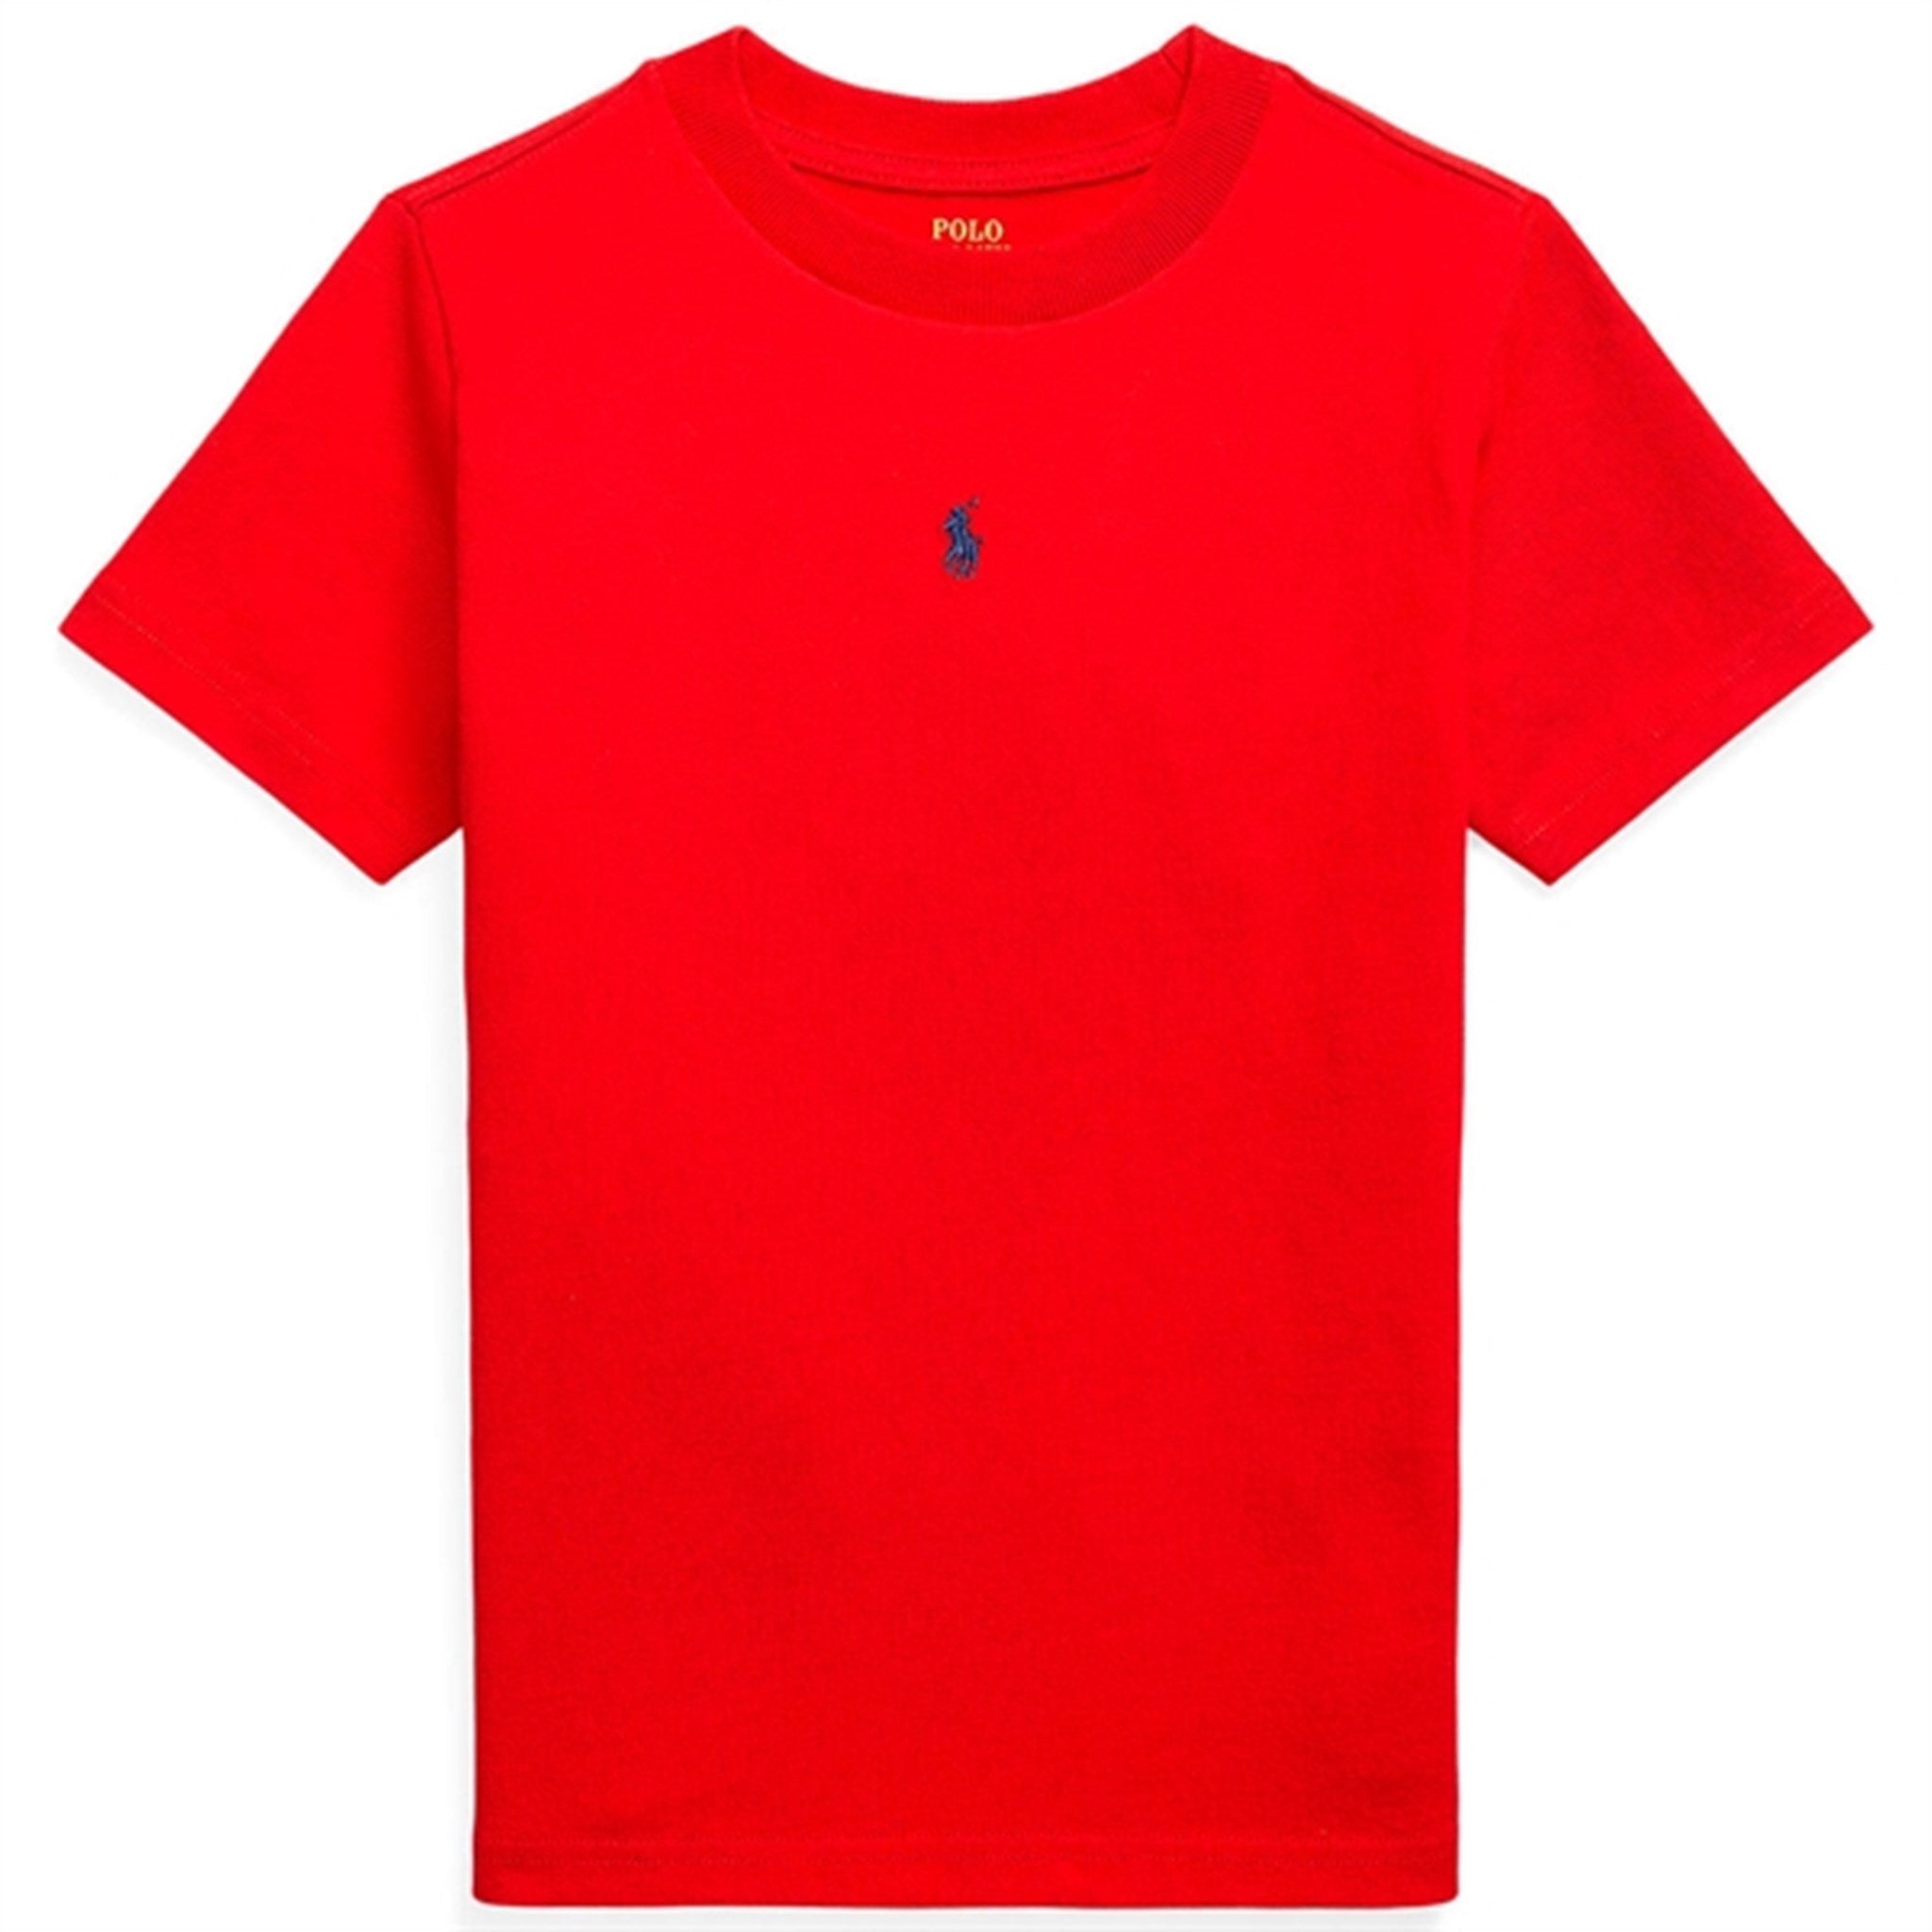 Polo Ralph Lauren T-Shirt Rl2000 Red/C7998